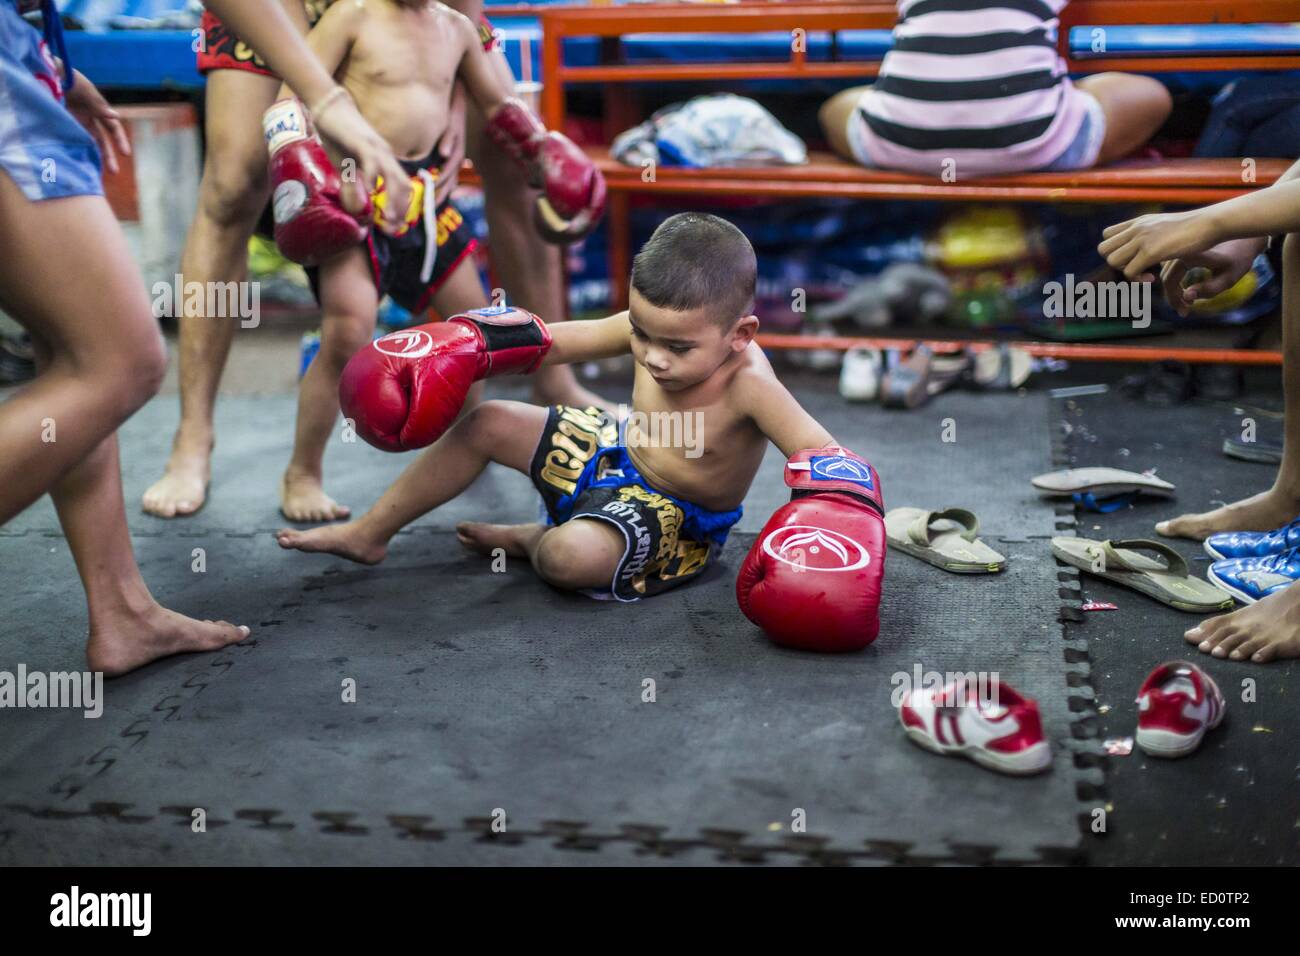 Bangkok, Bangkok, Thaïlande. Dec 23, 2014. Un garçon atterrit sur le plancher après l'entraînement dans la salle de sport Kanisorn à Bangkok. Le Kanisorn boxing gym est une petite salle de sport le long de la Wong Wian Yai - Samut Sakhon voie ferrée. Les jeunes des communautés voisines viennent à la salle de sport pour apprendre la boxe. Le Muay Thai (Muai thaï) est un art martial mixte développé en Thaïlande. Le Muay Thai est devenue très répandue dans le monde au xxe siècle, quand les boxeurs Thaï défait d'autres boxeurs bien connu. Une ligue professionnelle est régie par le monde Conseil de Muay Thai. Muay Thai est souvent considérée comme un moyen de sortir de la pauvreté pour Banque D'Images